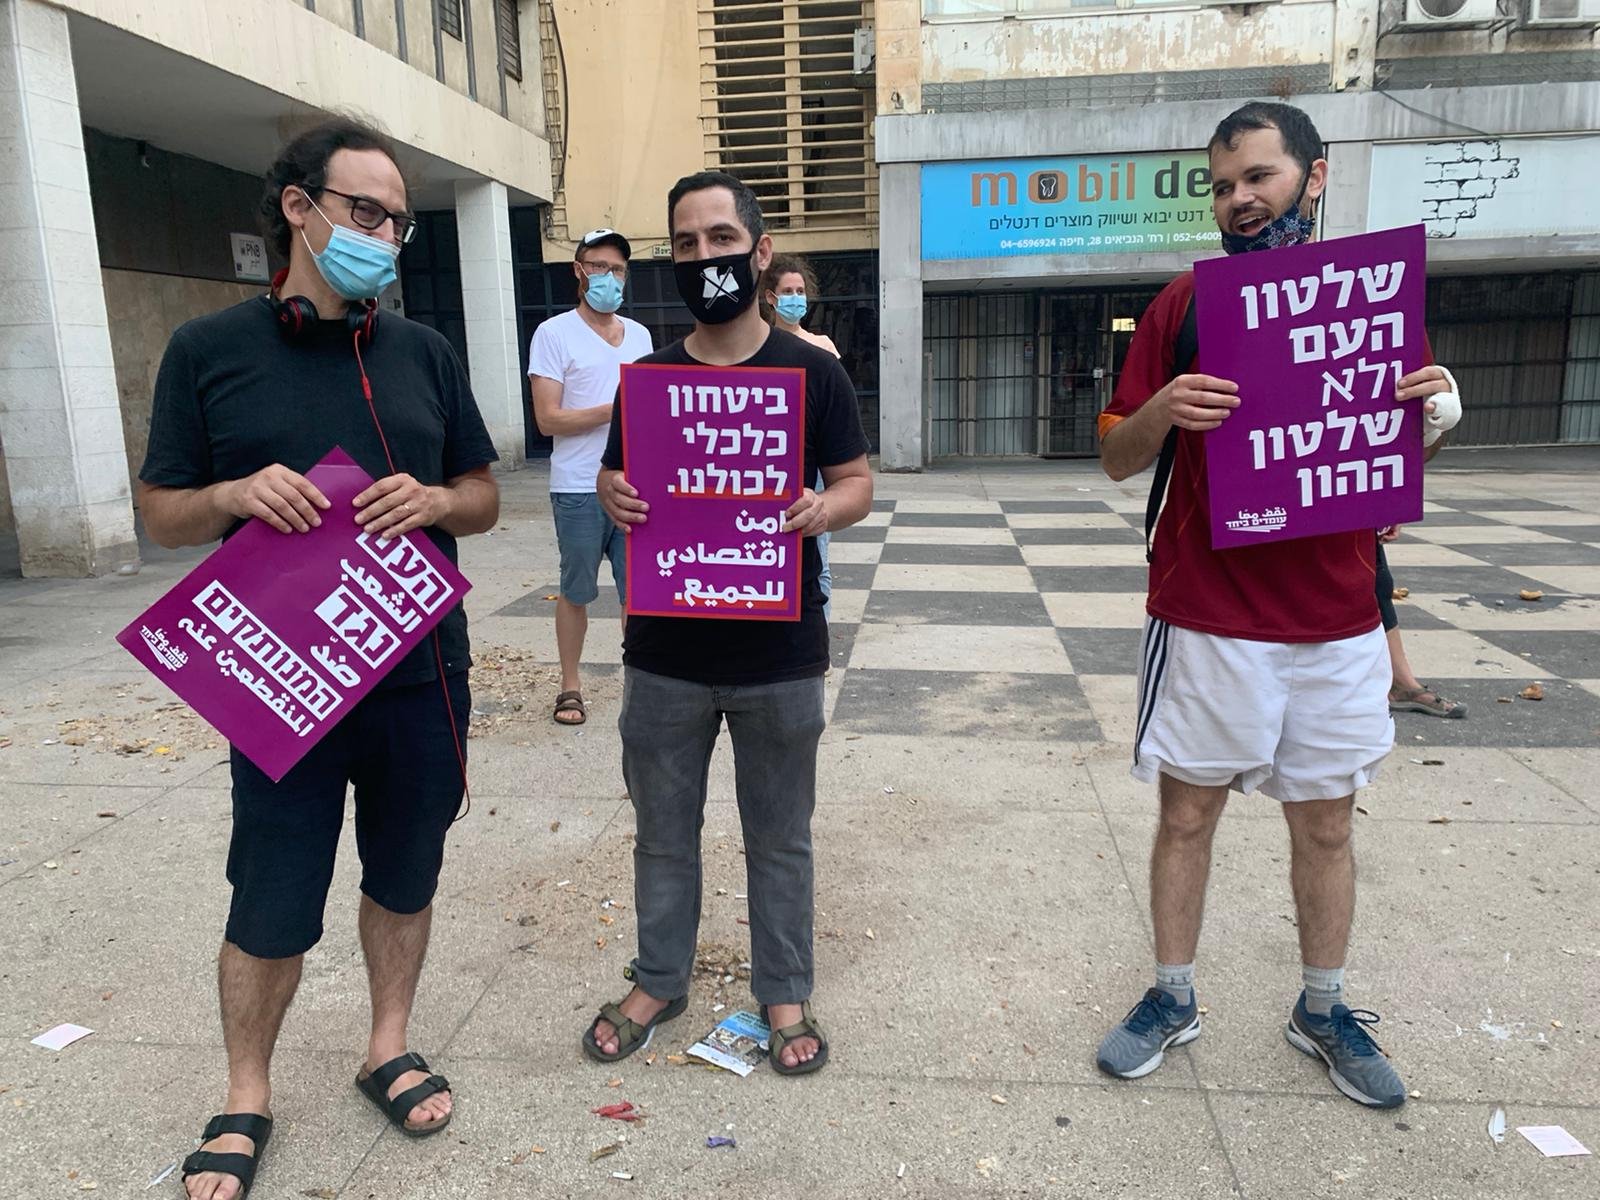 حيفا: صرخة عربيّة يهوديّة للمطالبة بتمكين وأمان اقتصادي -6